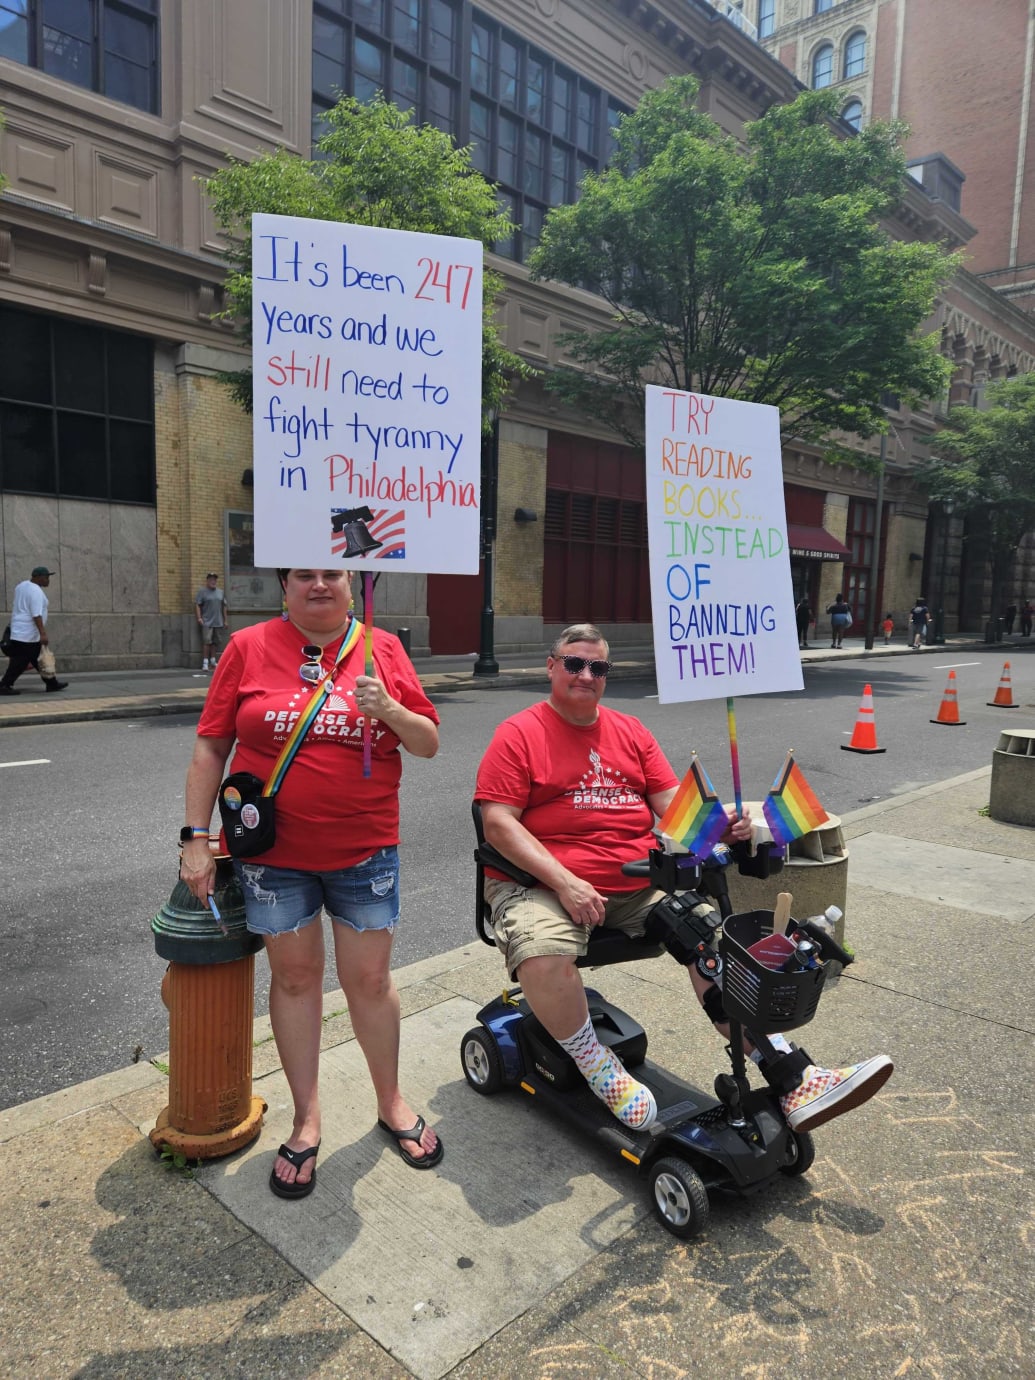 Los manifestantes se opusieron a las prohibiciones de libros de Moms For Liberty y la agenda anti-LGBTQ del grupo. 